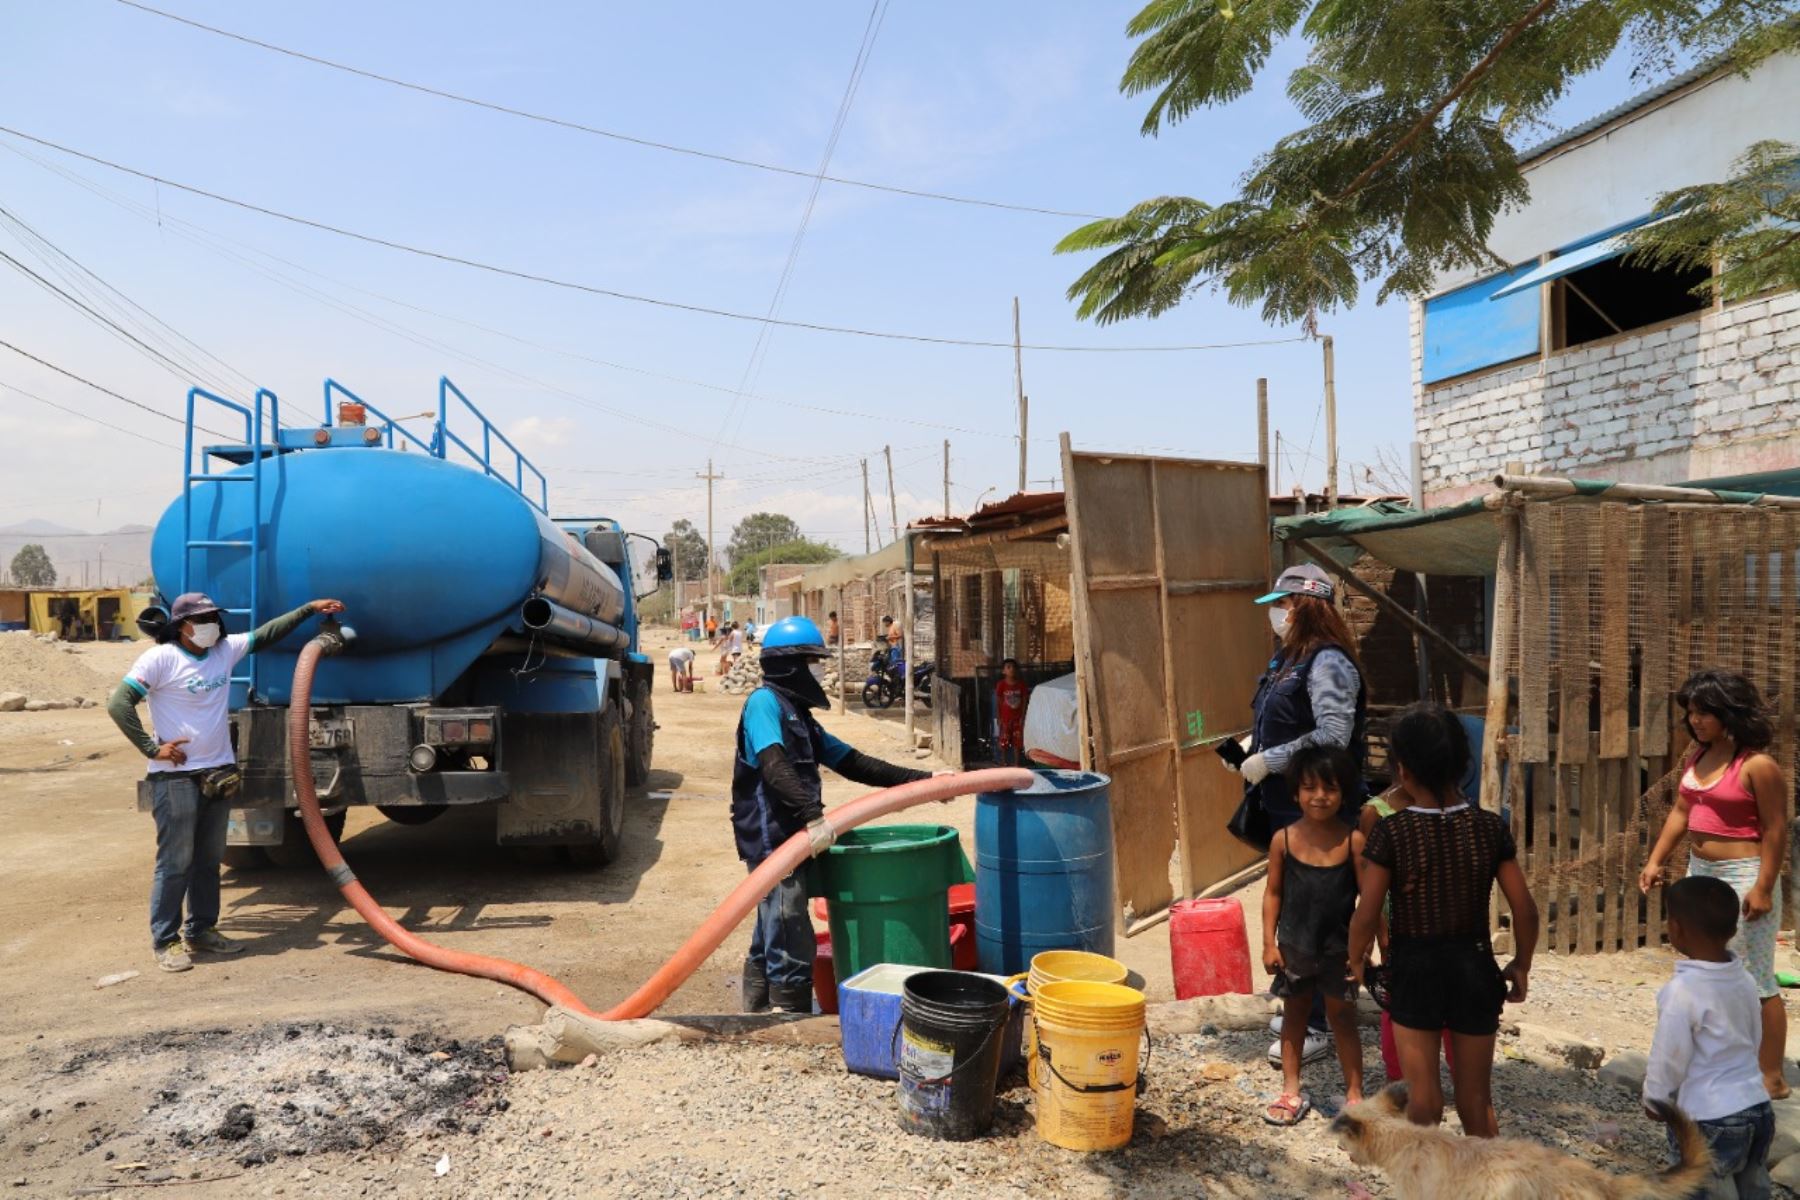 Ejecutivo transfiere recursos para abastecimiento de agua gratuita a familias vulnerables